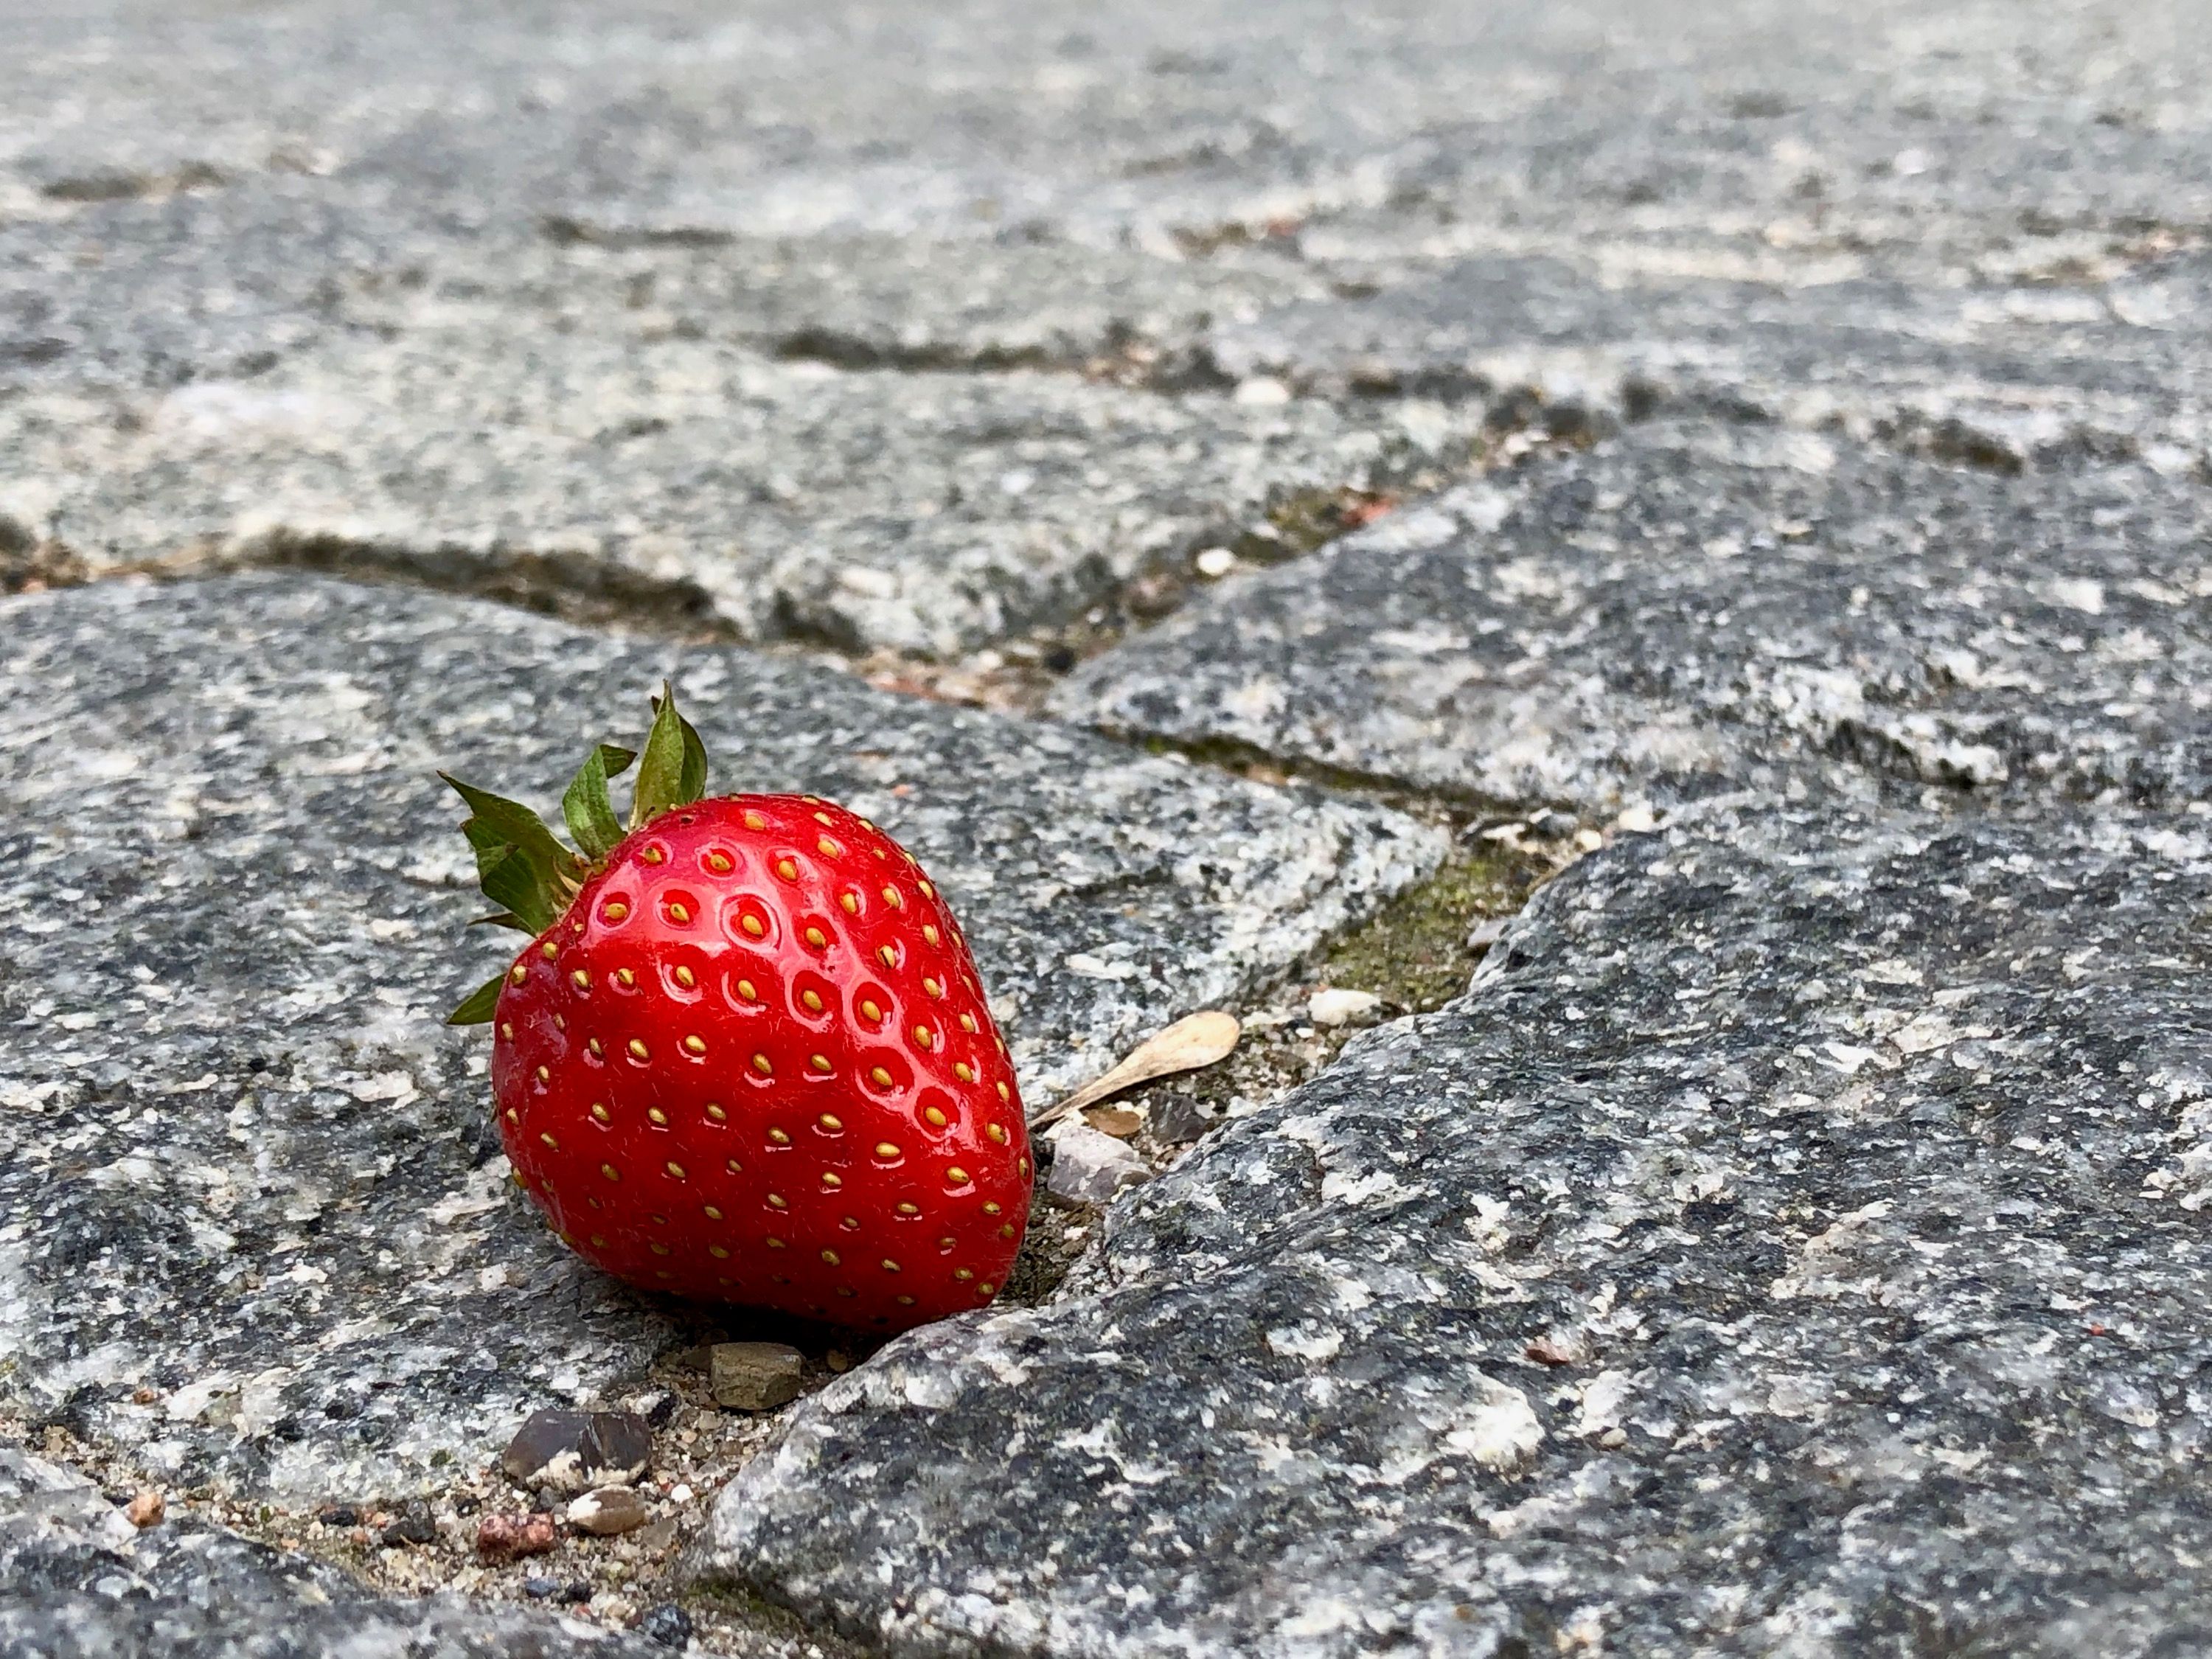 Mmm…jordbær…mmm